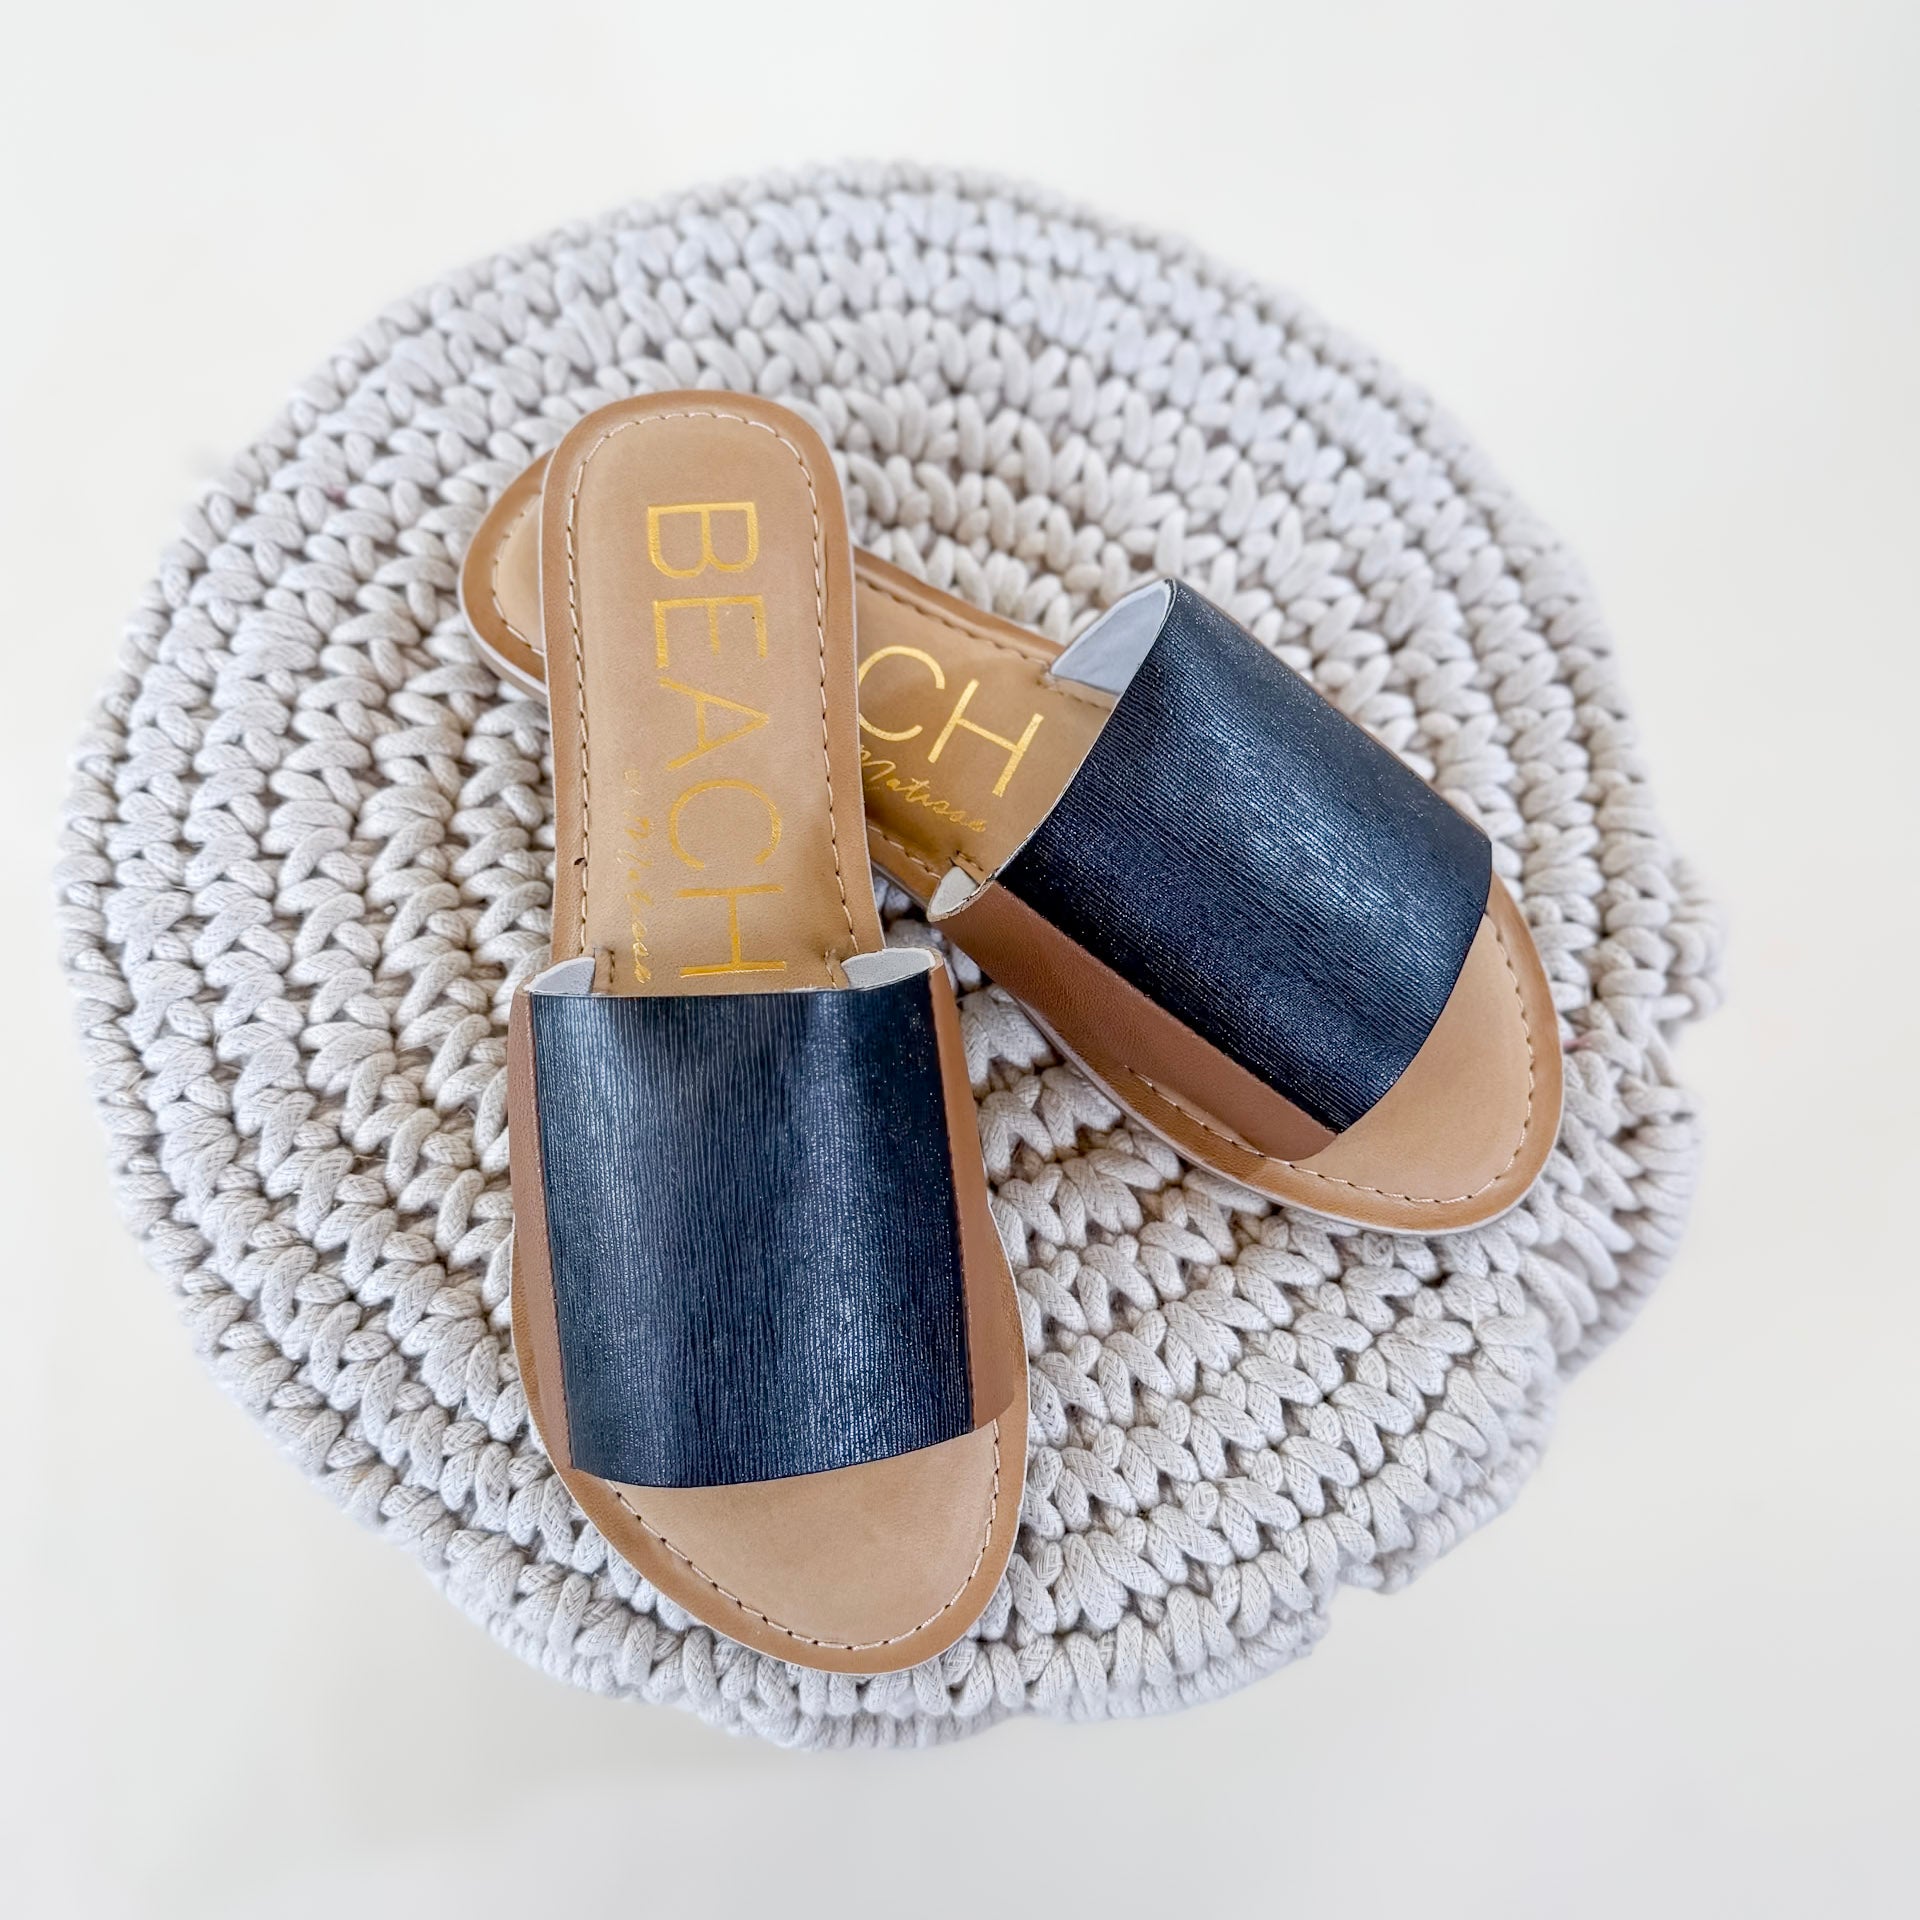 Matisse | Bonfire Slide Sandal in Tan and Black - Giddy Up Glamour Boutique